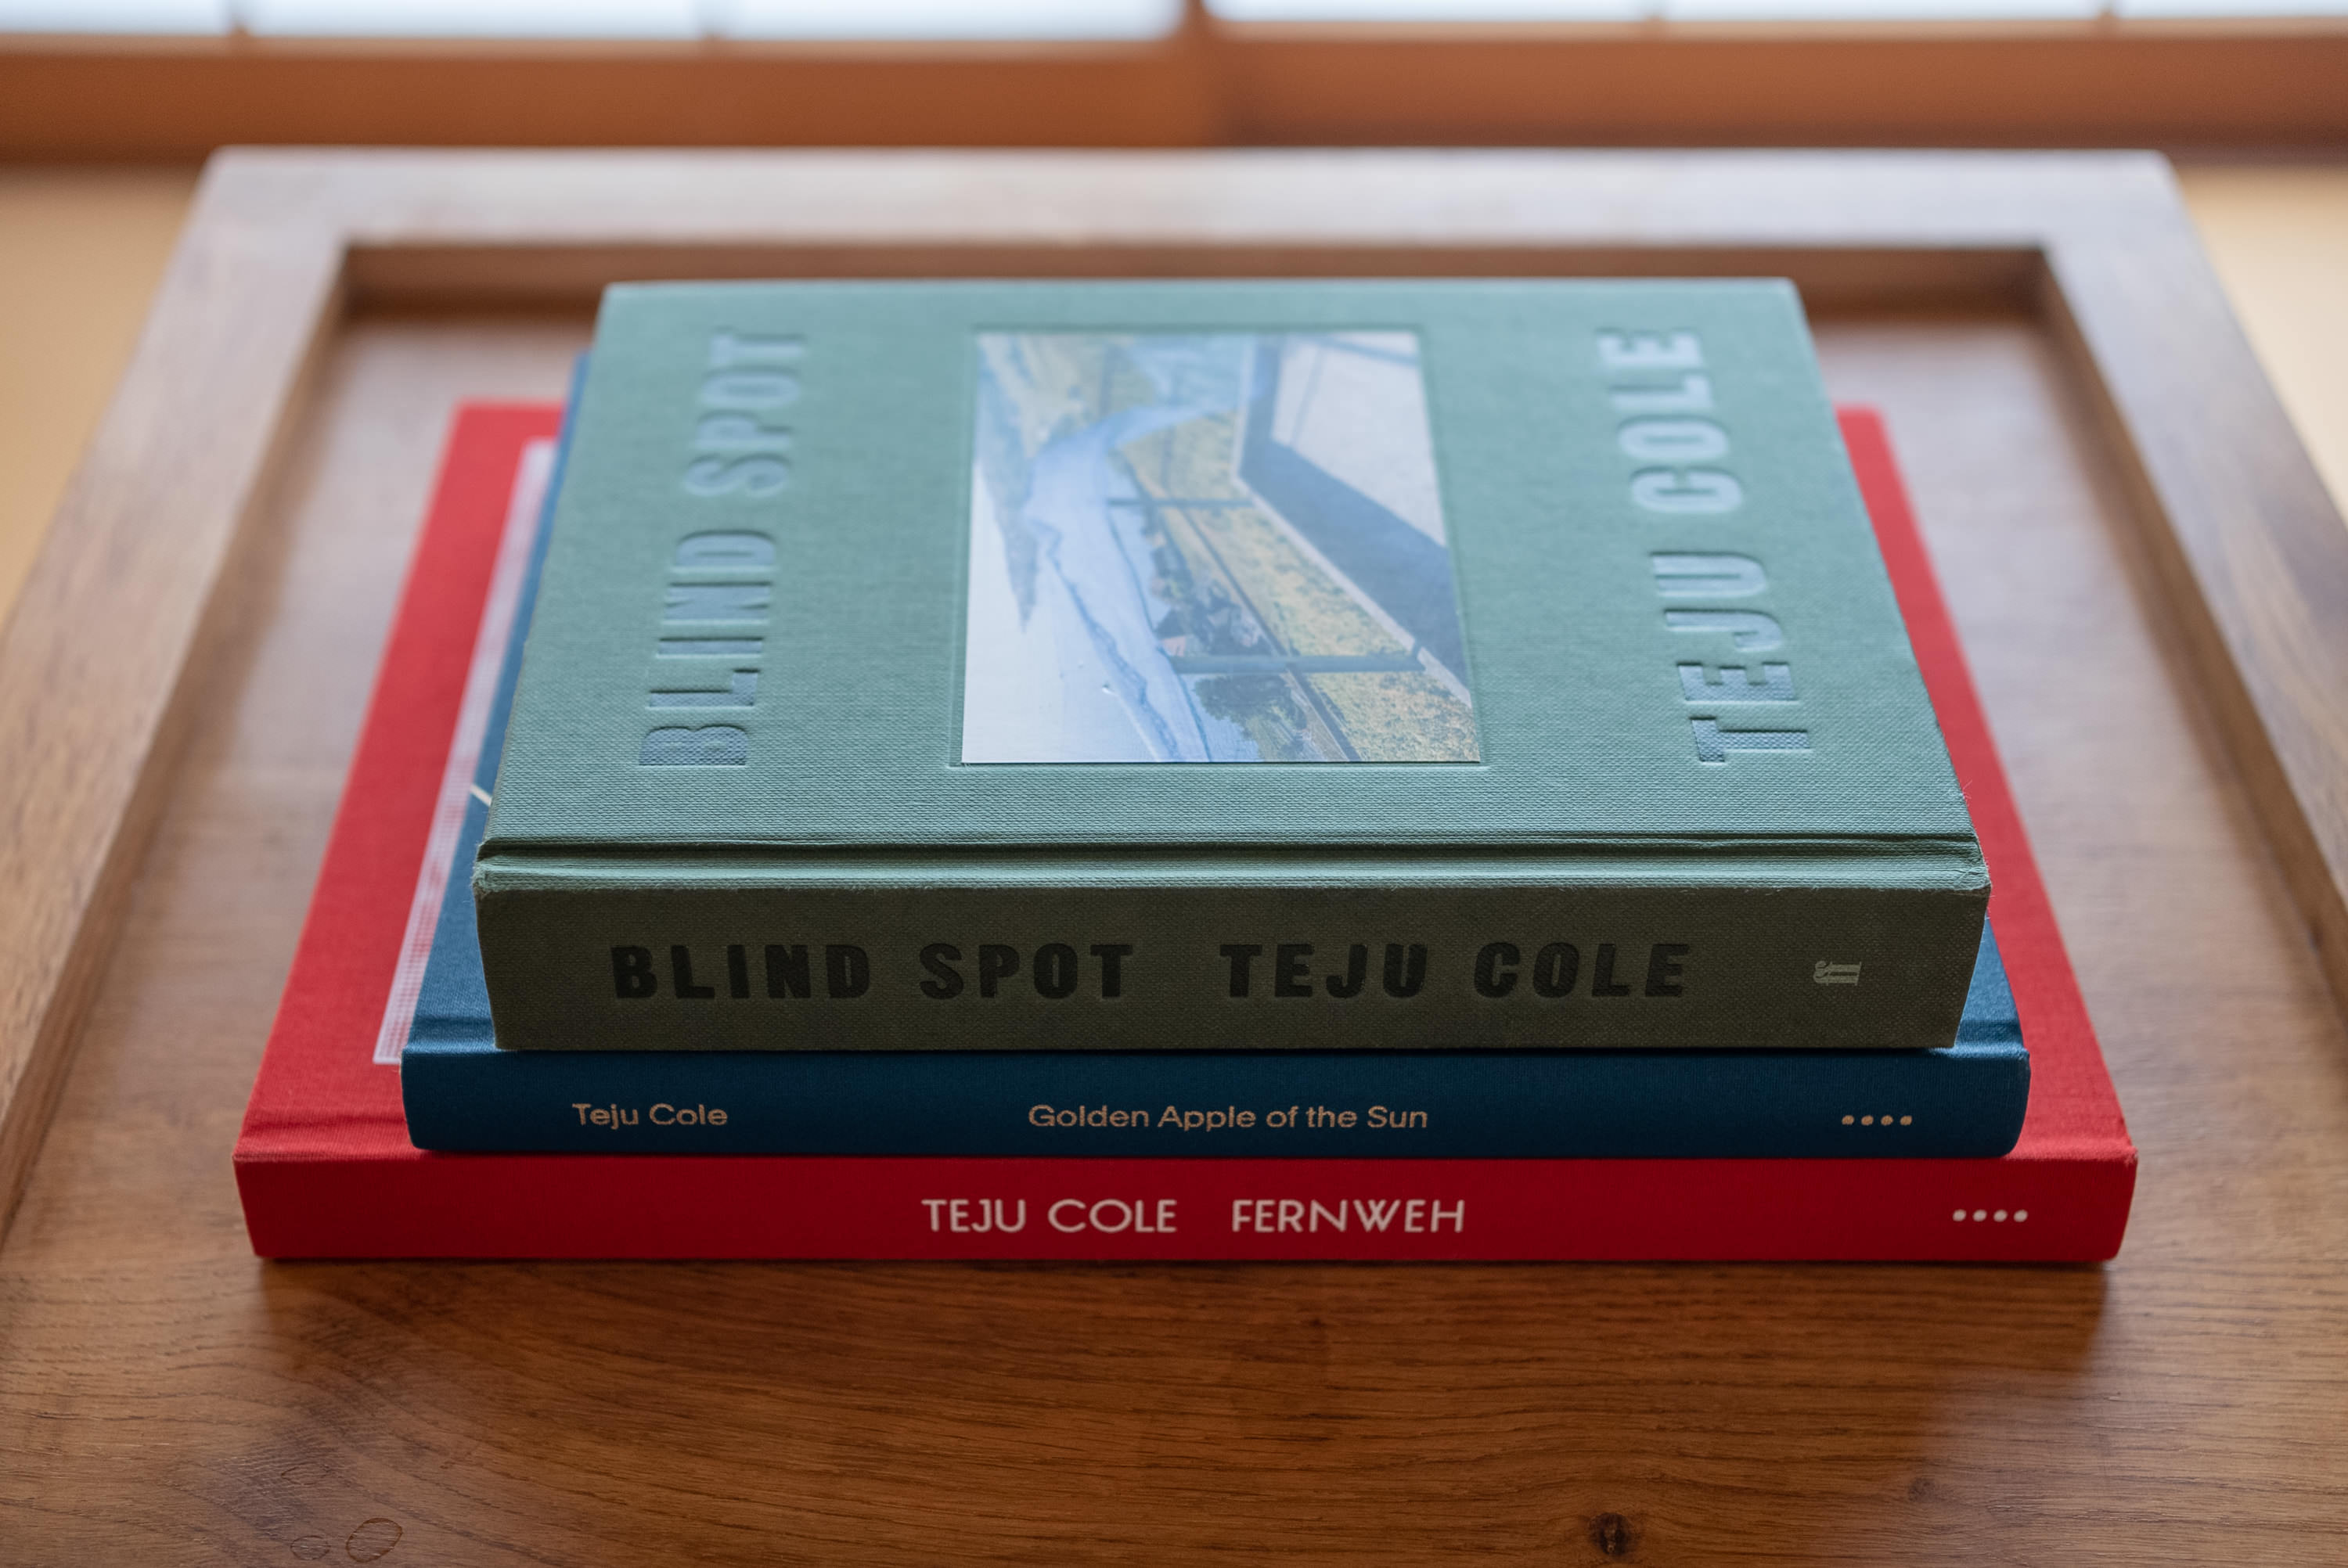 Cole's photo-focused books